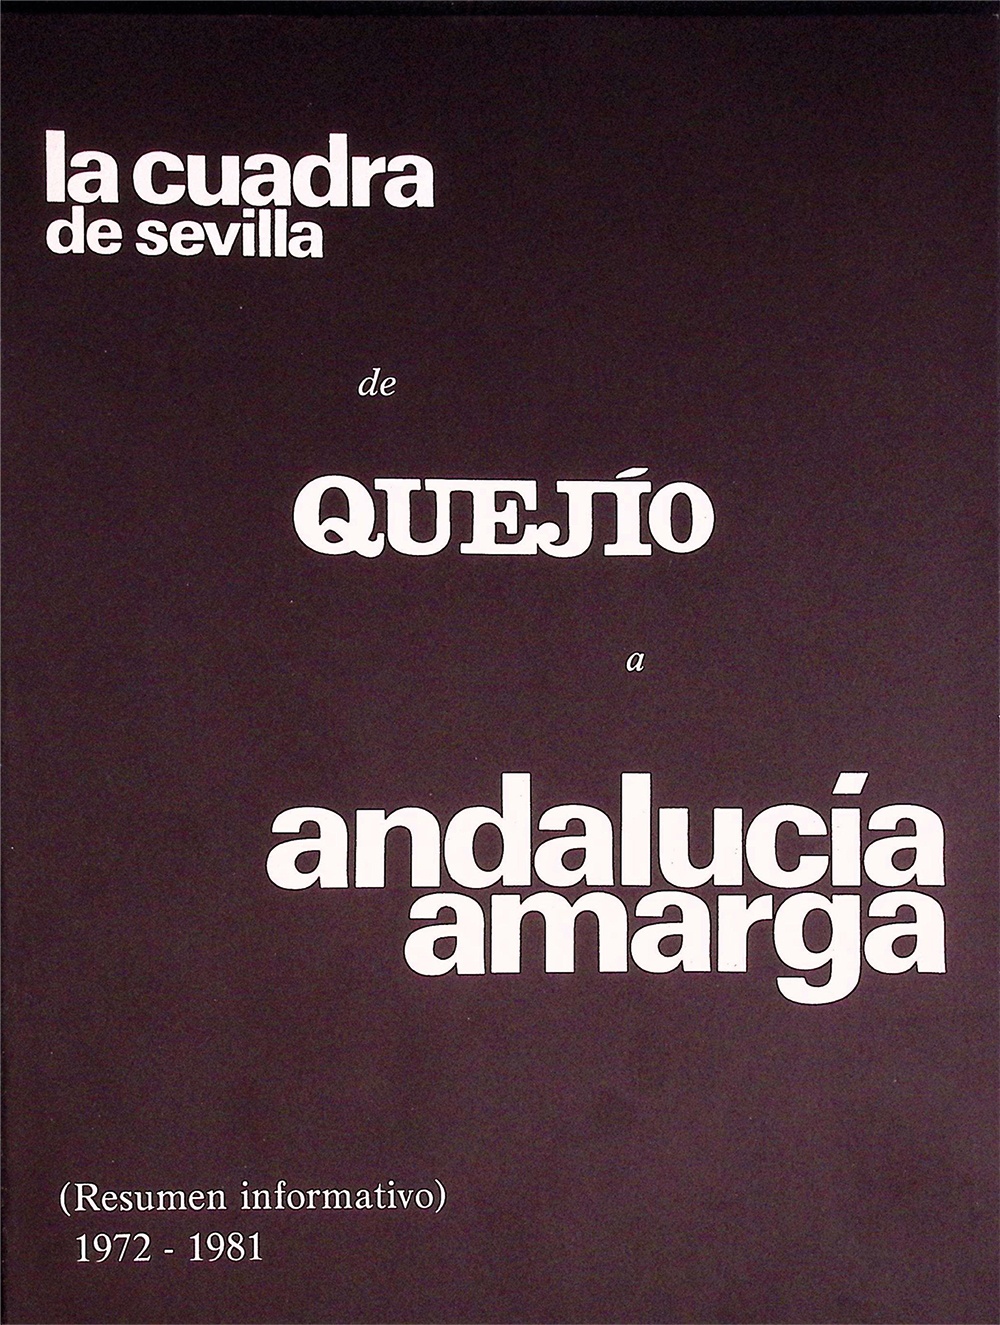 La Cuadra de Sevilla, de Quejio a Andalucía amarga (Resumen informativo) 1972-1981